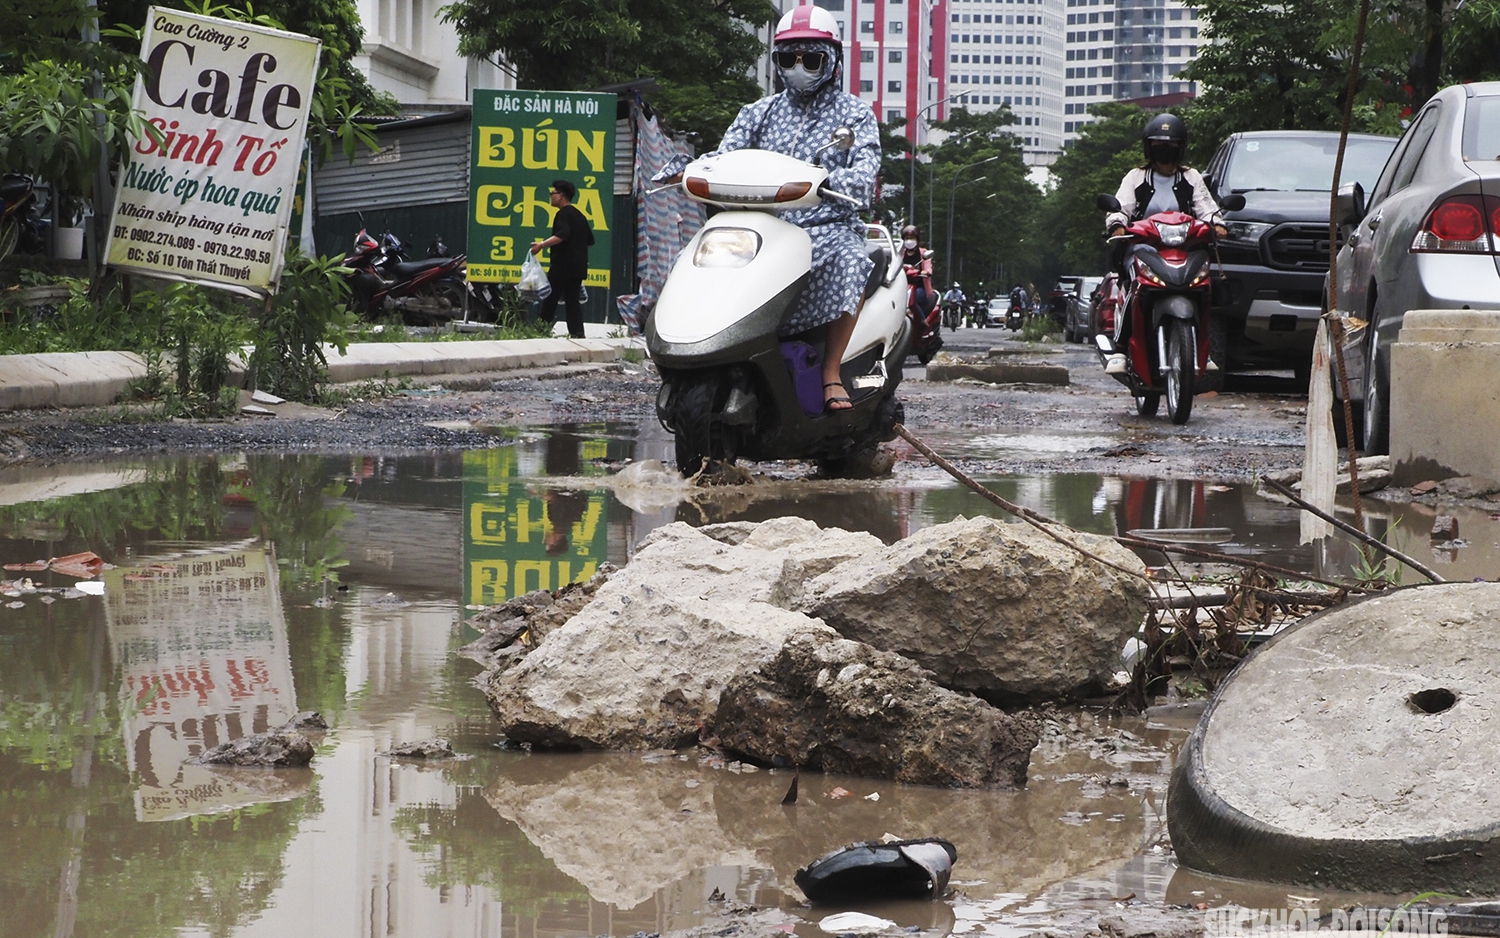 "Con đường đau khổ" ở Hà Nội khiến nhiều người, phương tiện "gặp nạn" chính thức "khơi thông" điểm nghẽn về vốn